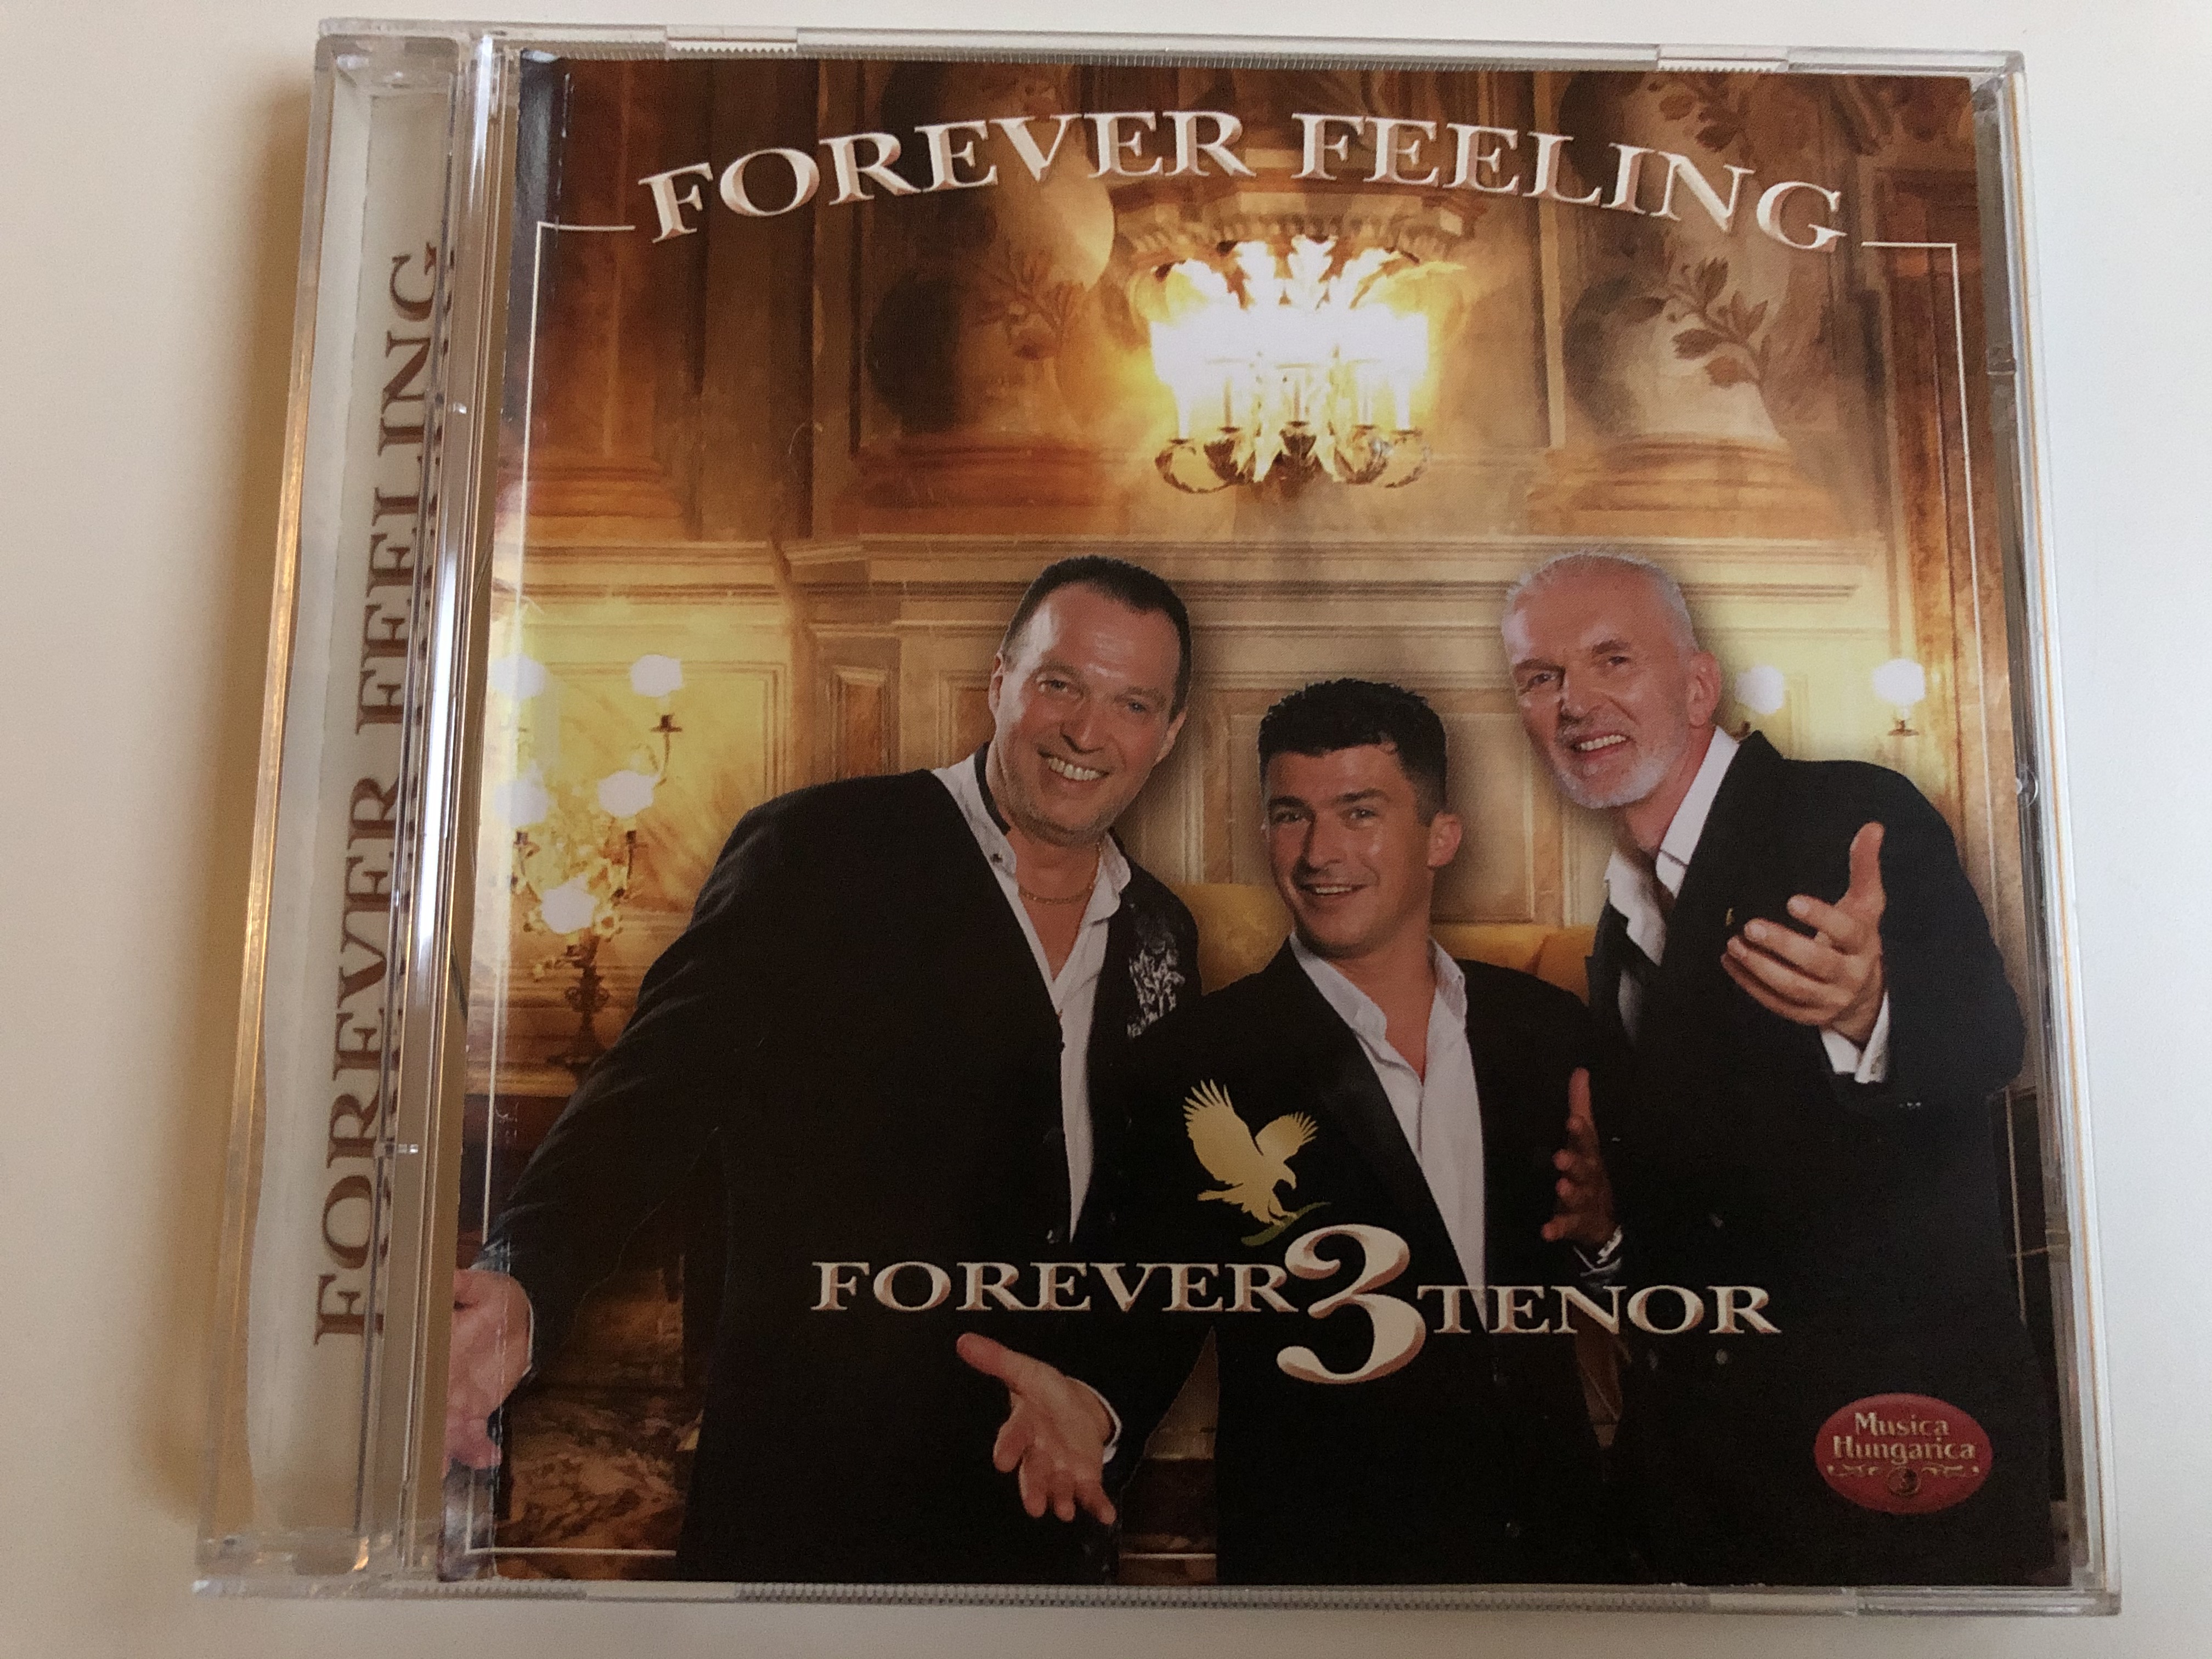 forever-feeling-forever-3-tenor-musica-hungarica-audio-cd-2011-stereo-mha-552-1-.jpg